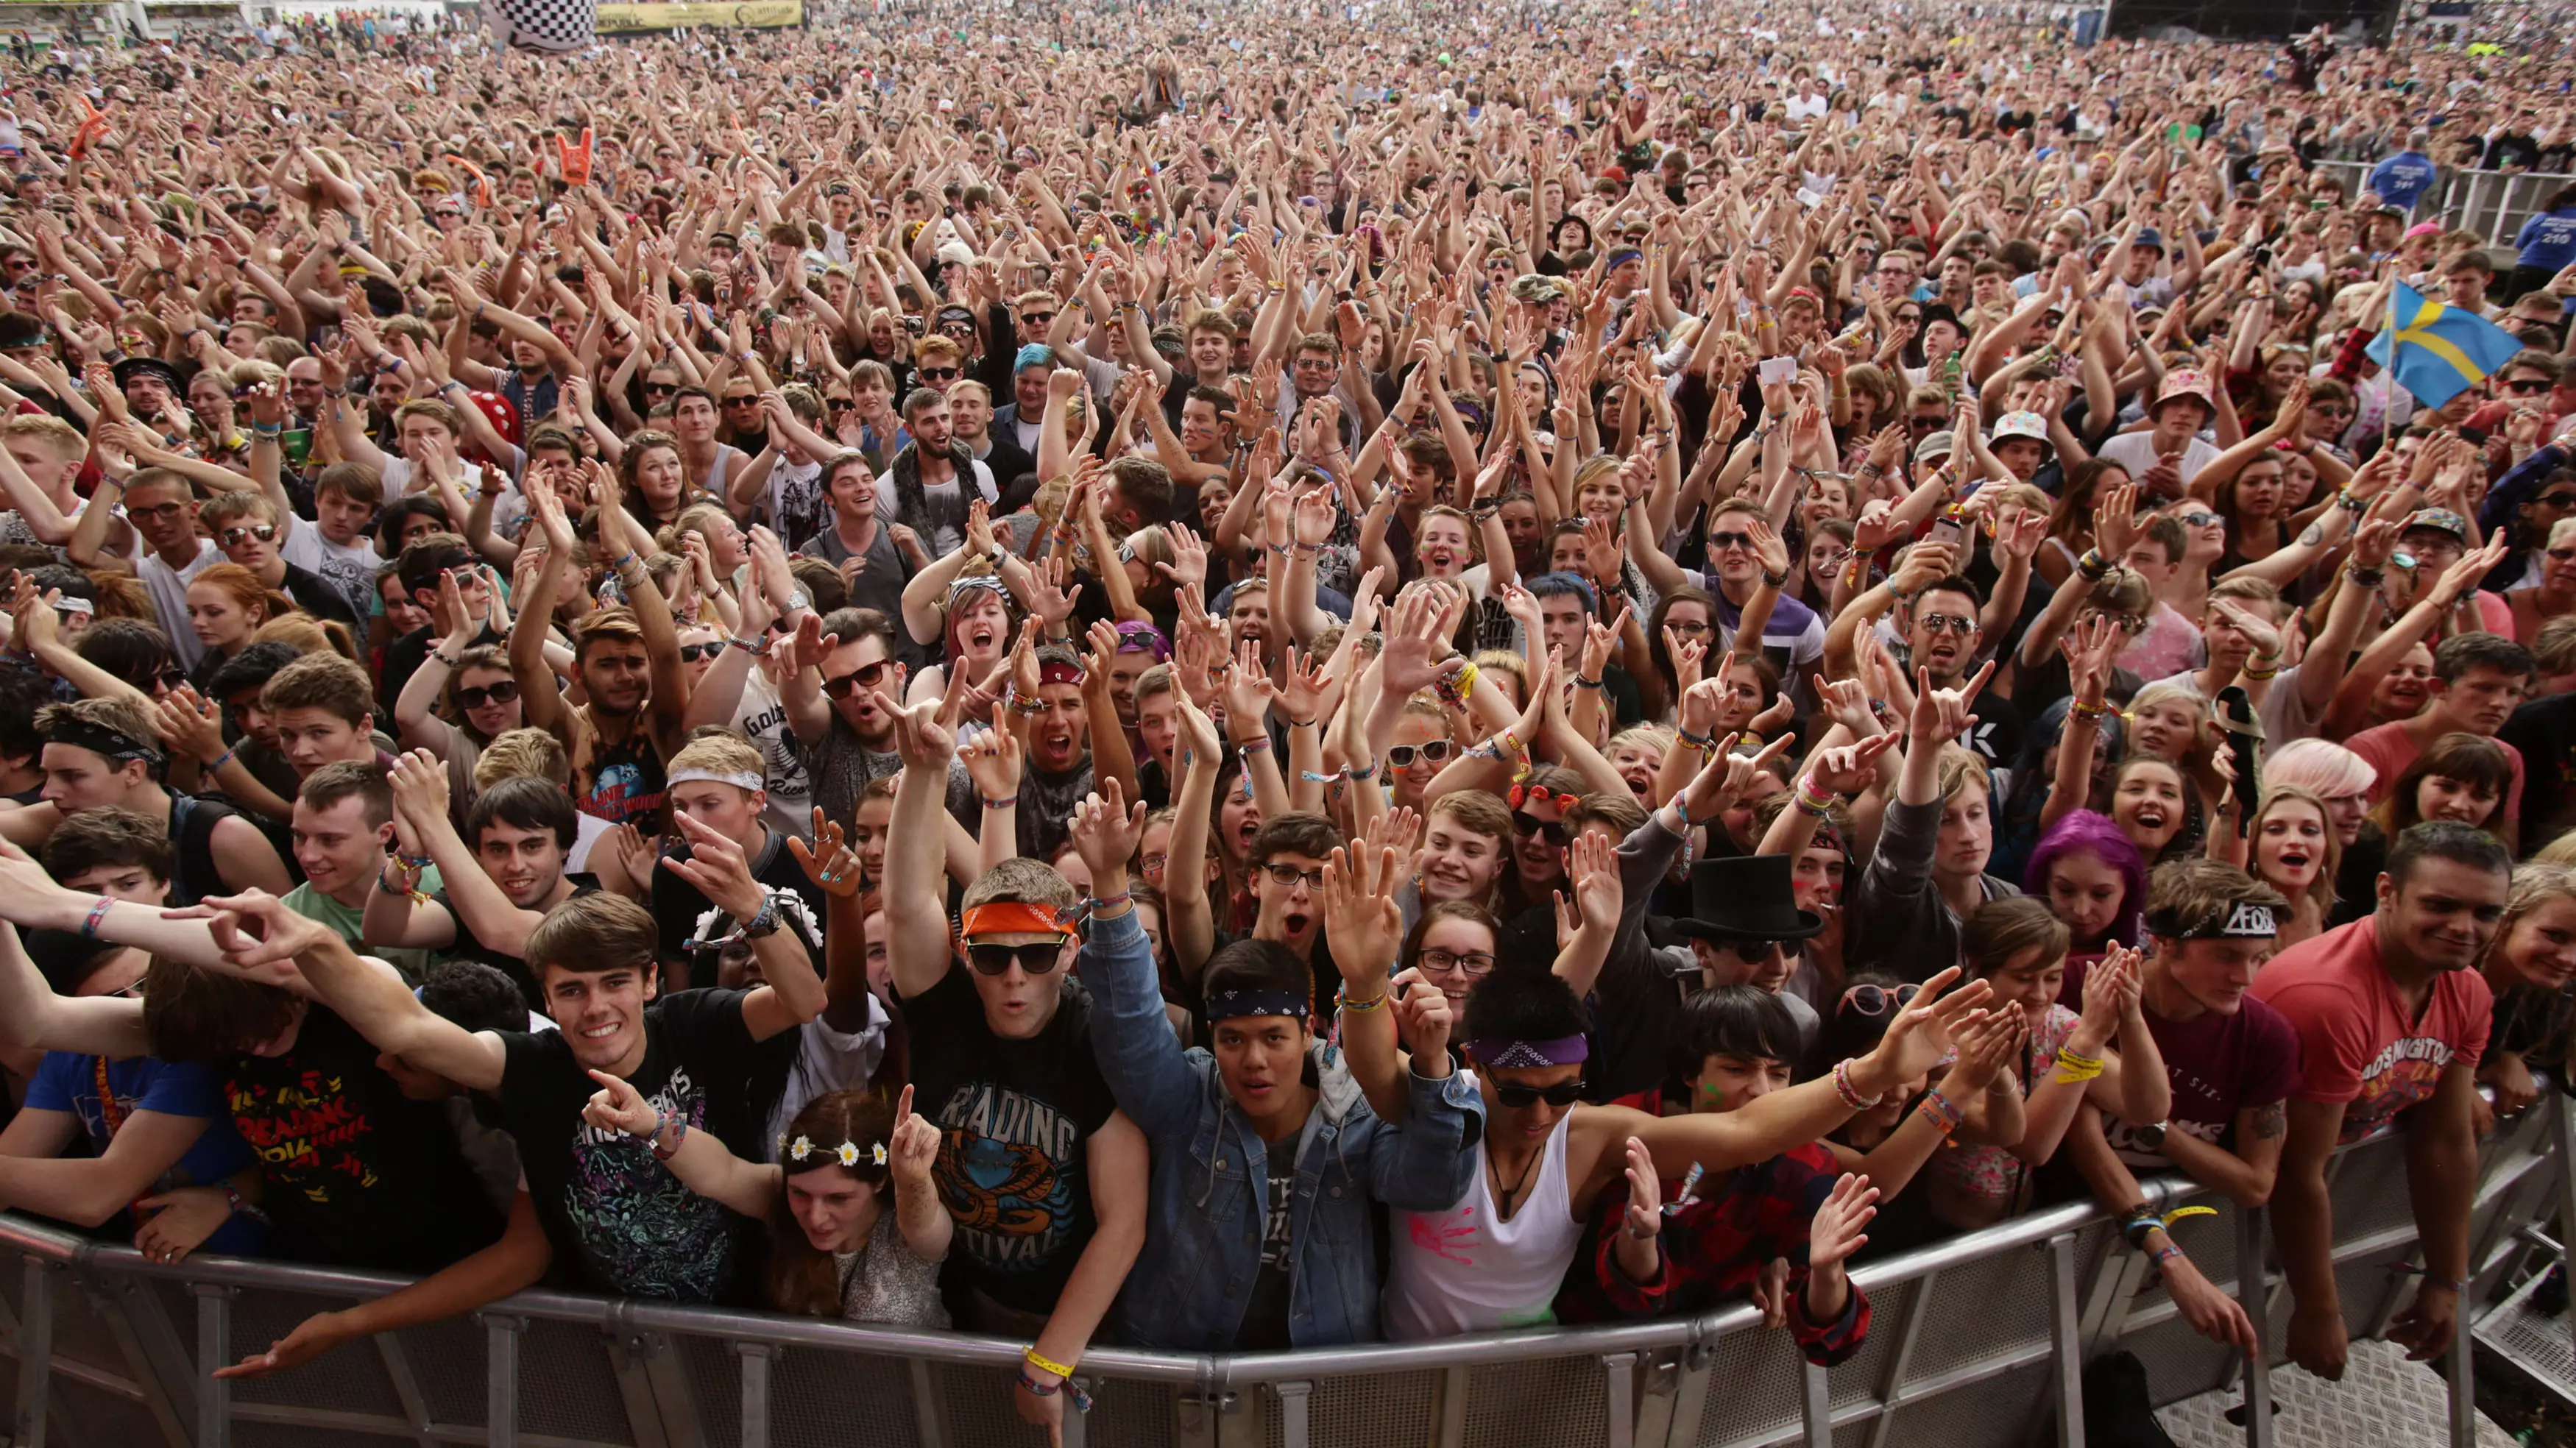 UK Festival Organisers Call For On-Site Drug Testing